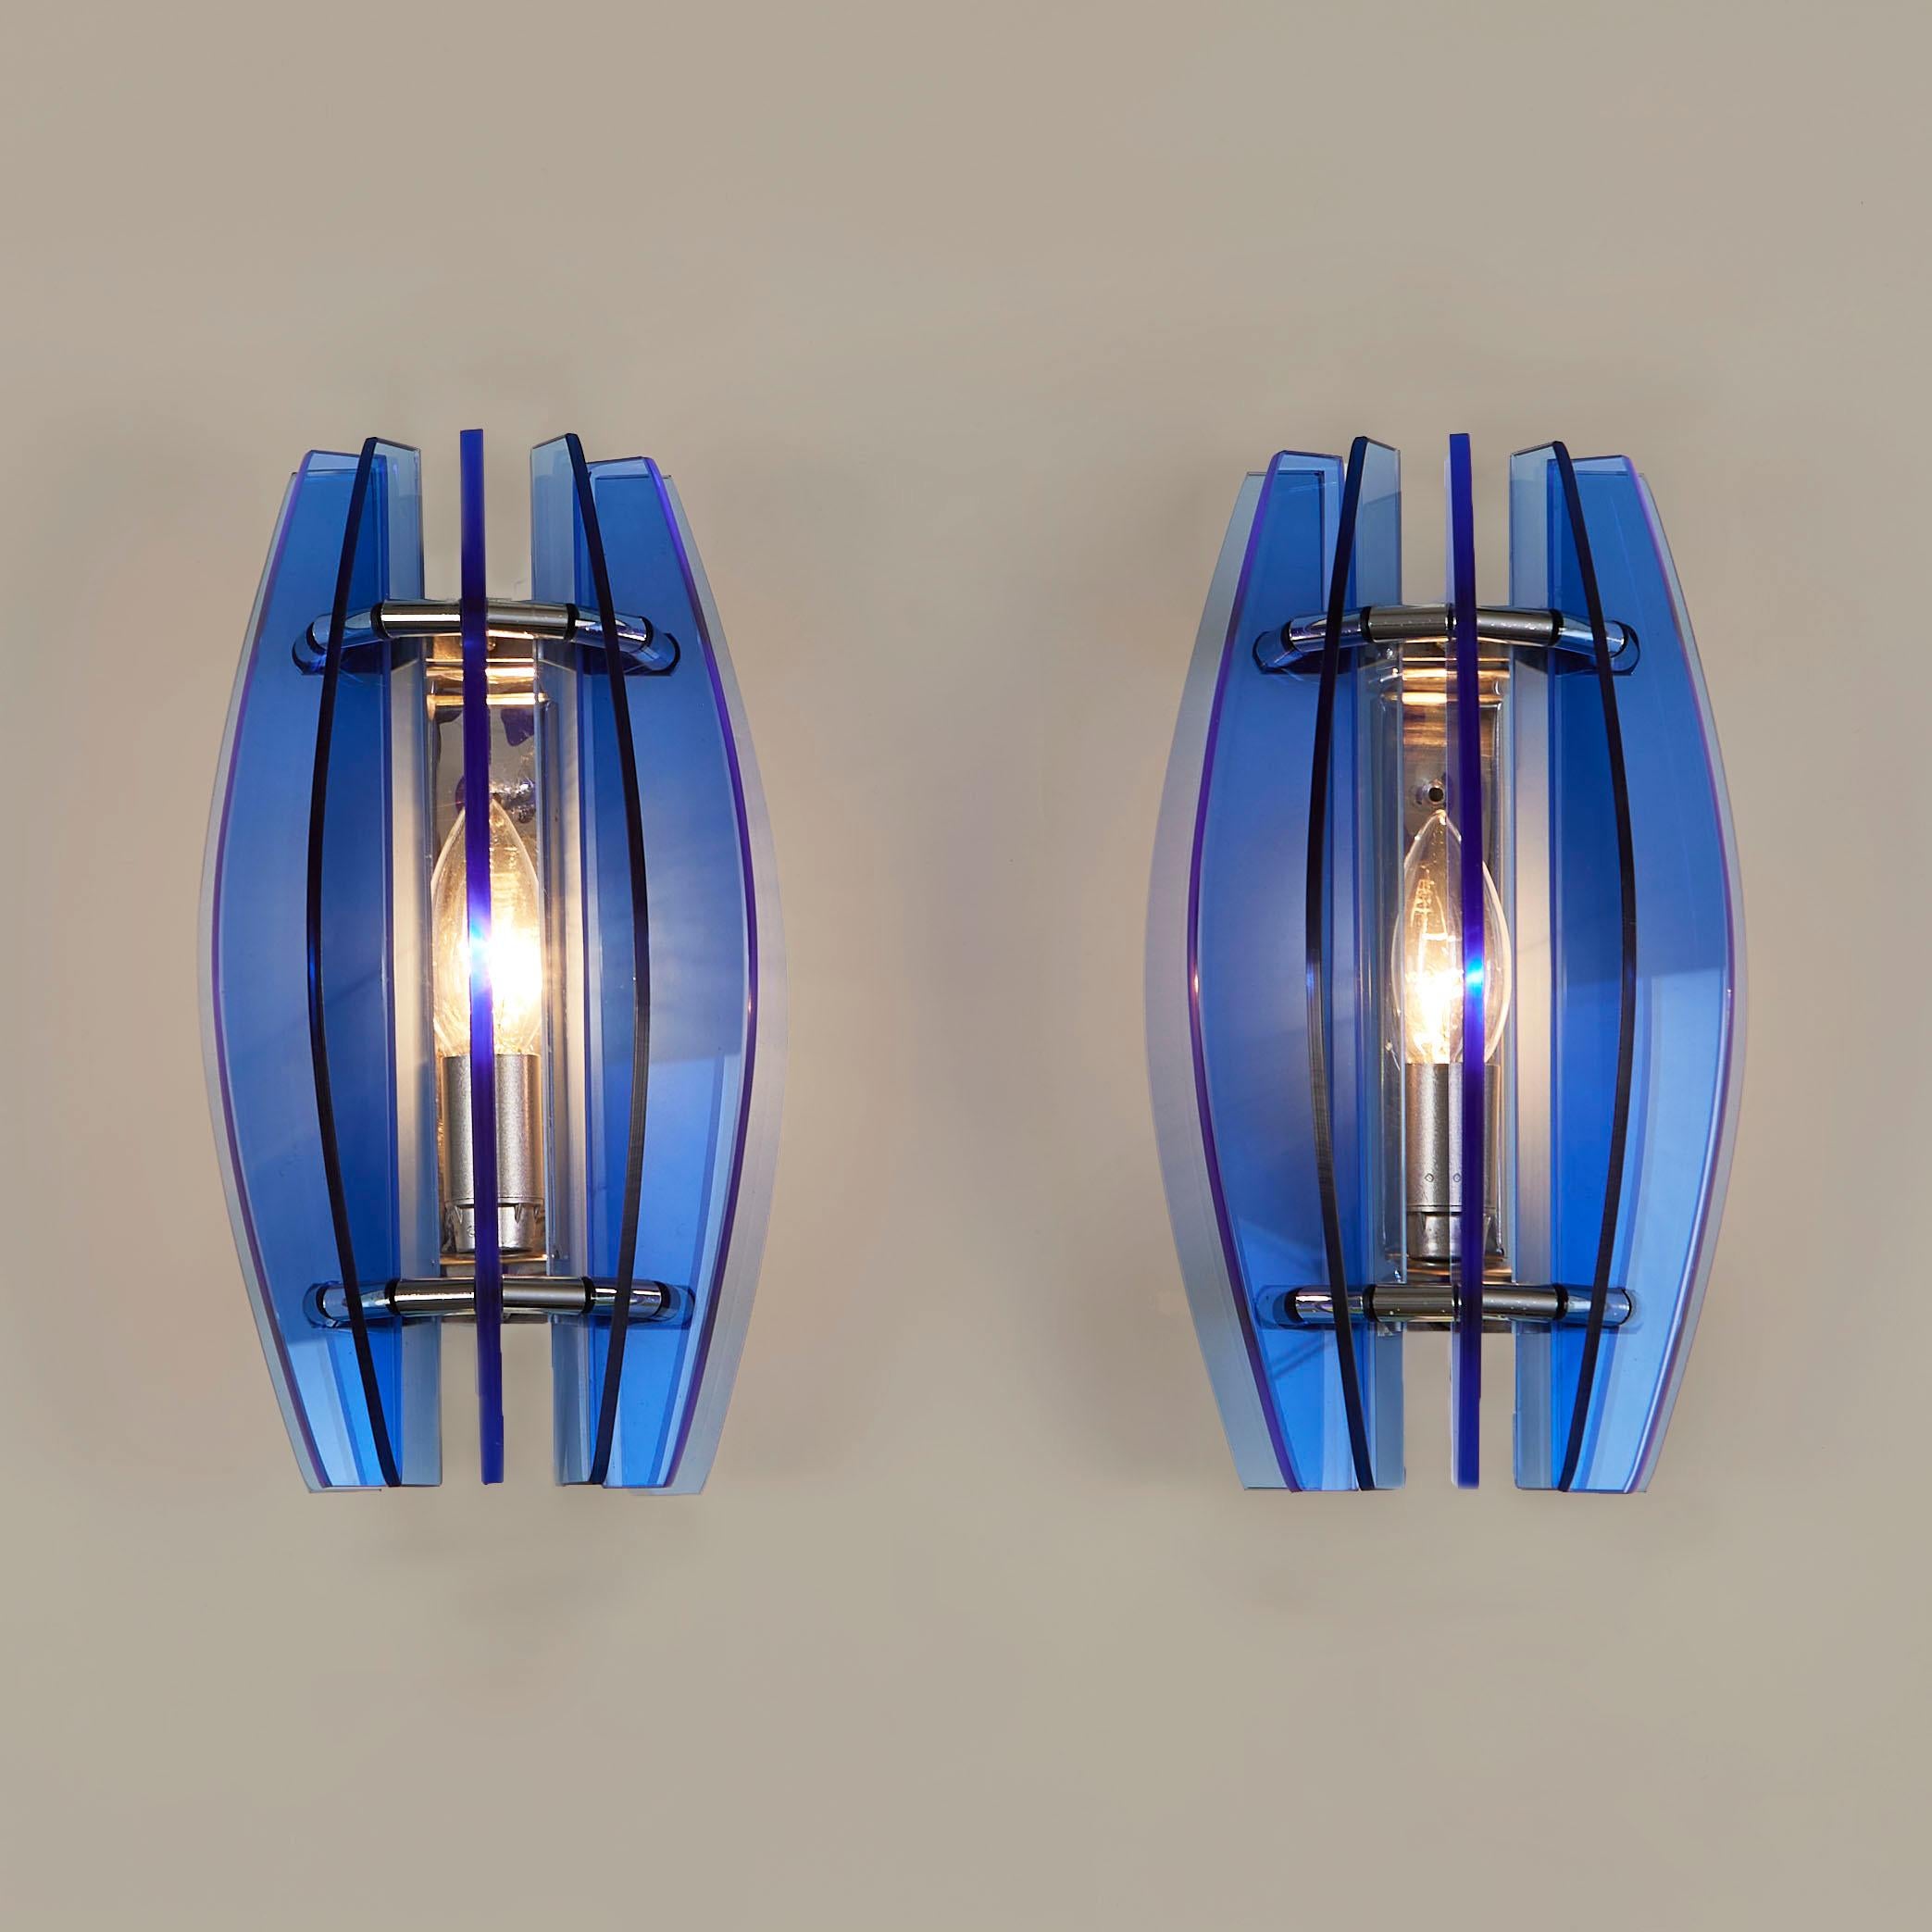 Leuchtend kobaltblaue, skulpturale Murano-Glasscheiben formen eine Kuppel über einer verchromten Rückwand.
